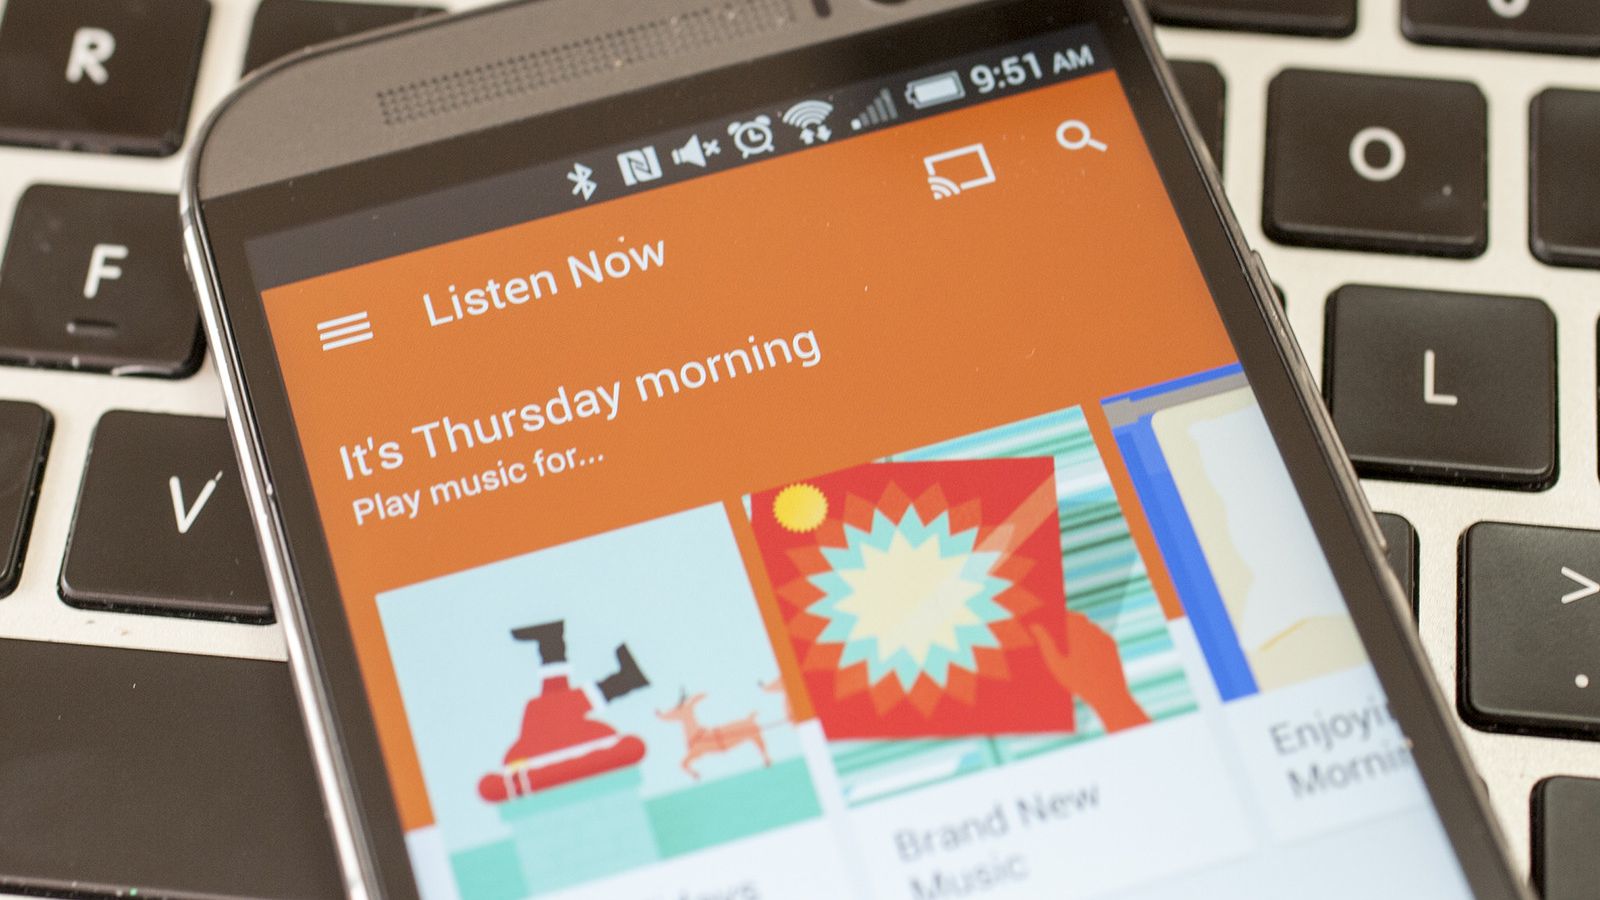 Google Play Música aumenta preços da assinatura individual e familiar –  Tecnoblog